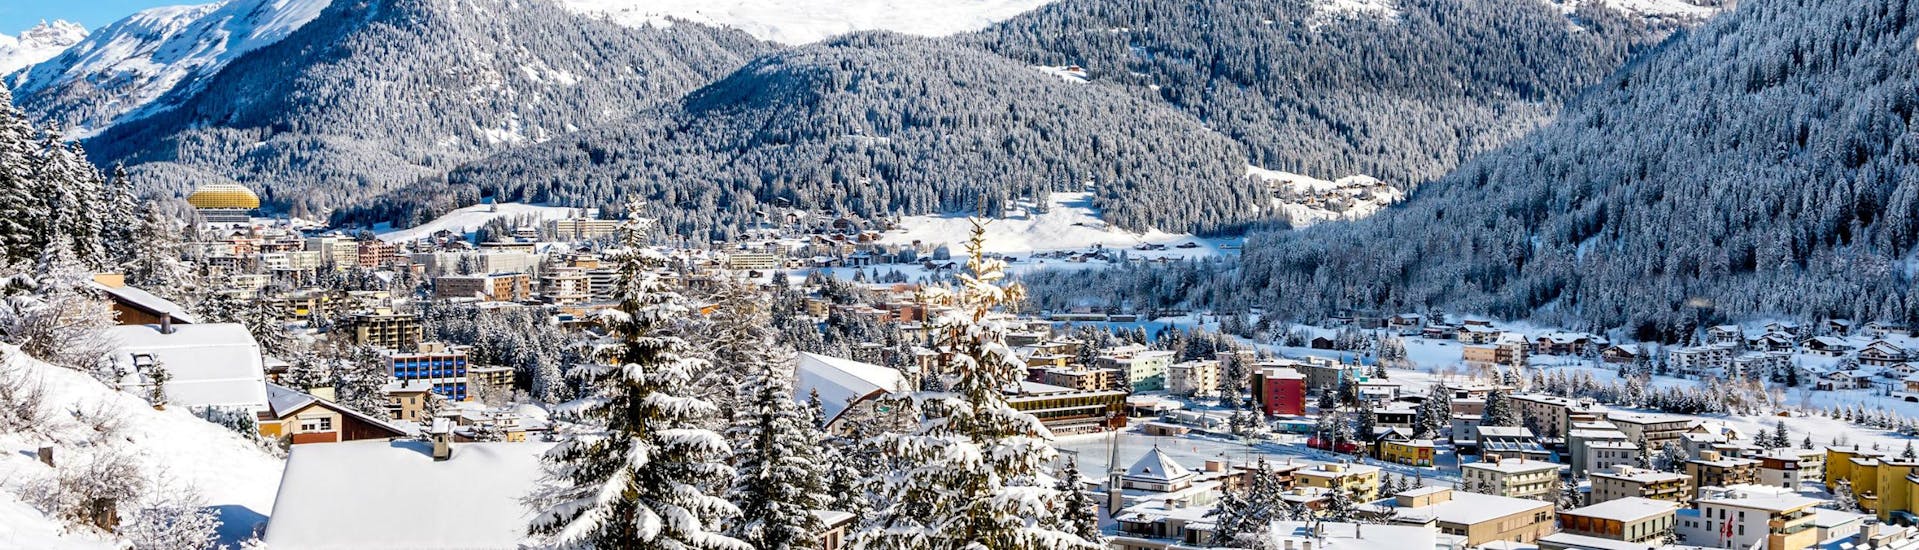 Ein Blick auf das schweizerische Davos, das nicht nur für das Weltwirtschaftsforum bekannt ist, sondern auch für seine Skischulen, die für all diejenigen, die das Skifahren lernen wollen, Skikurse anbieten.